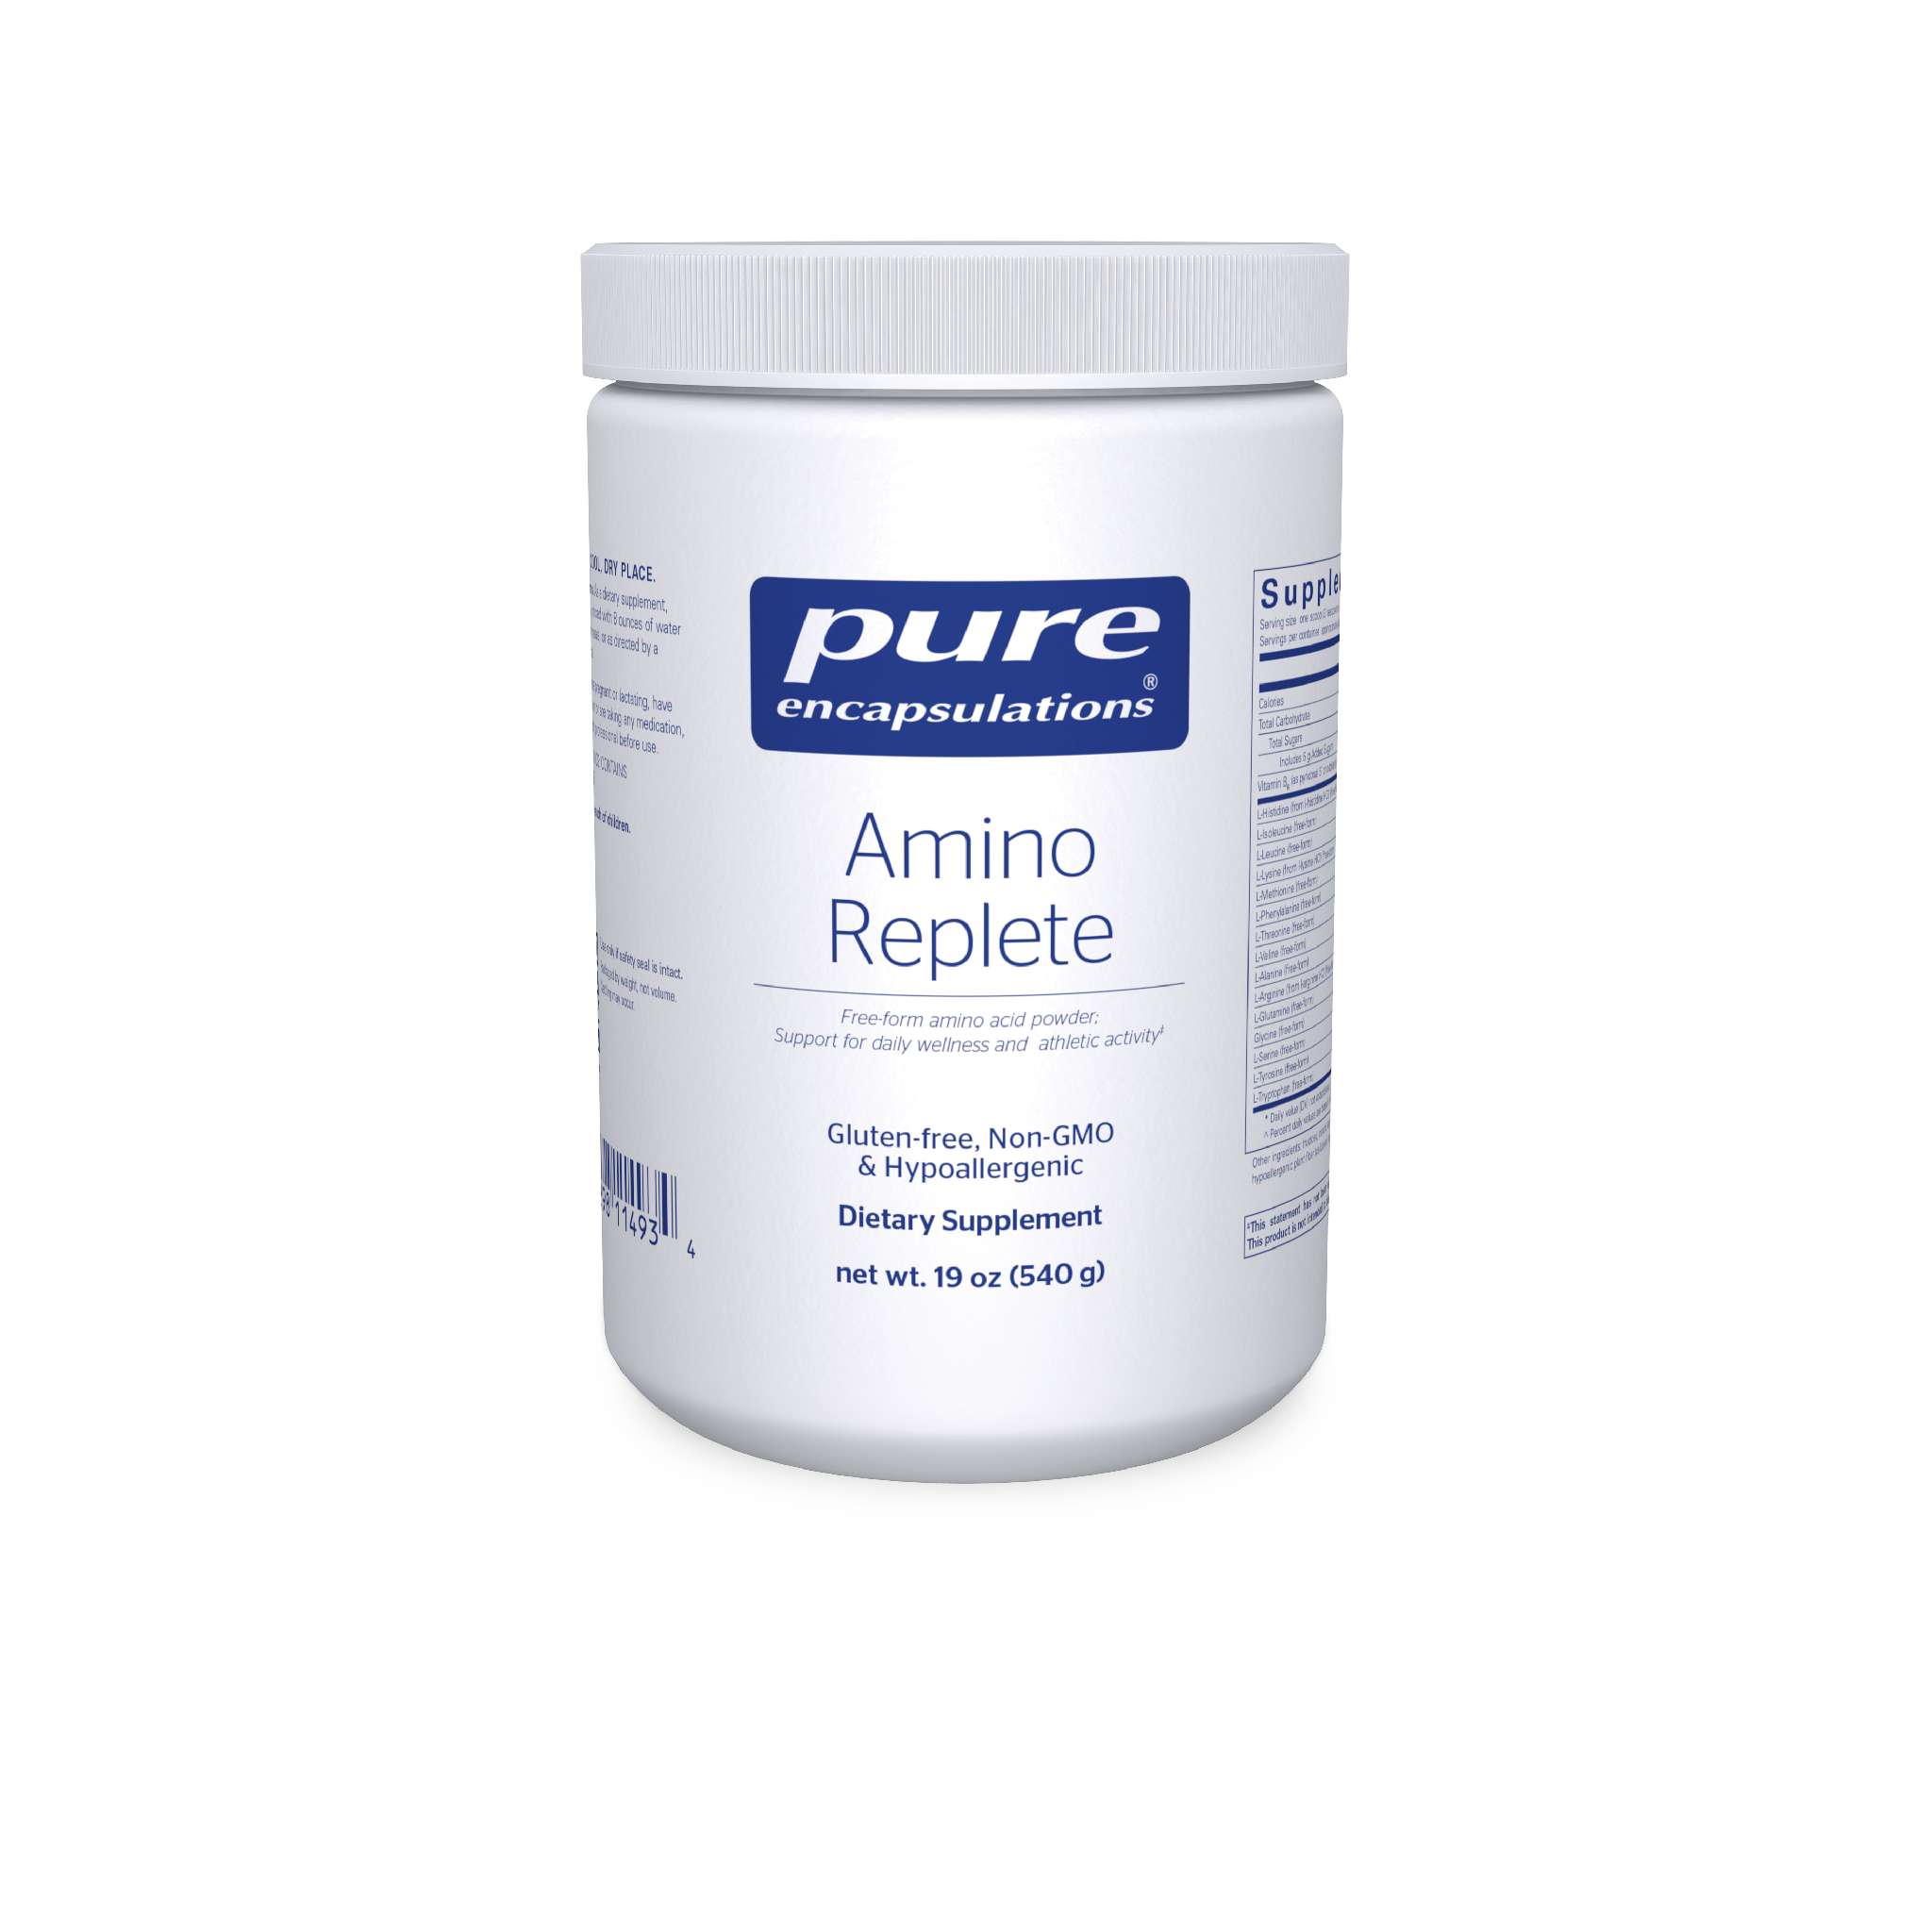 Pure Encapsulations - Amino Replete powder